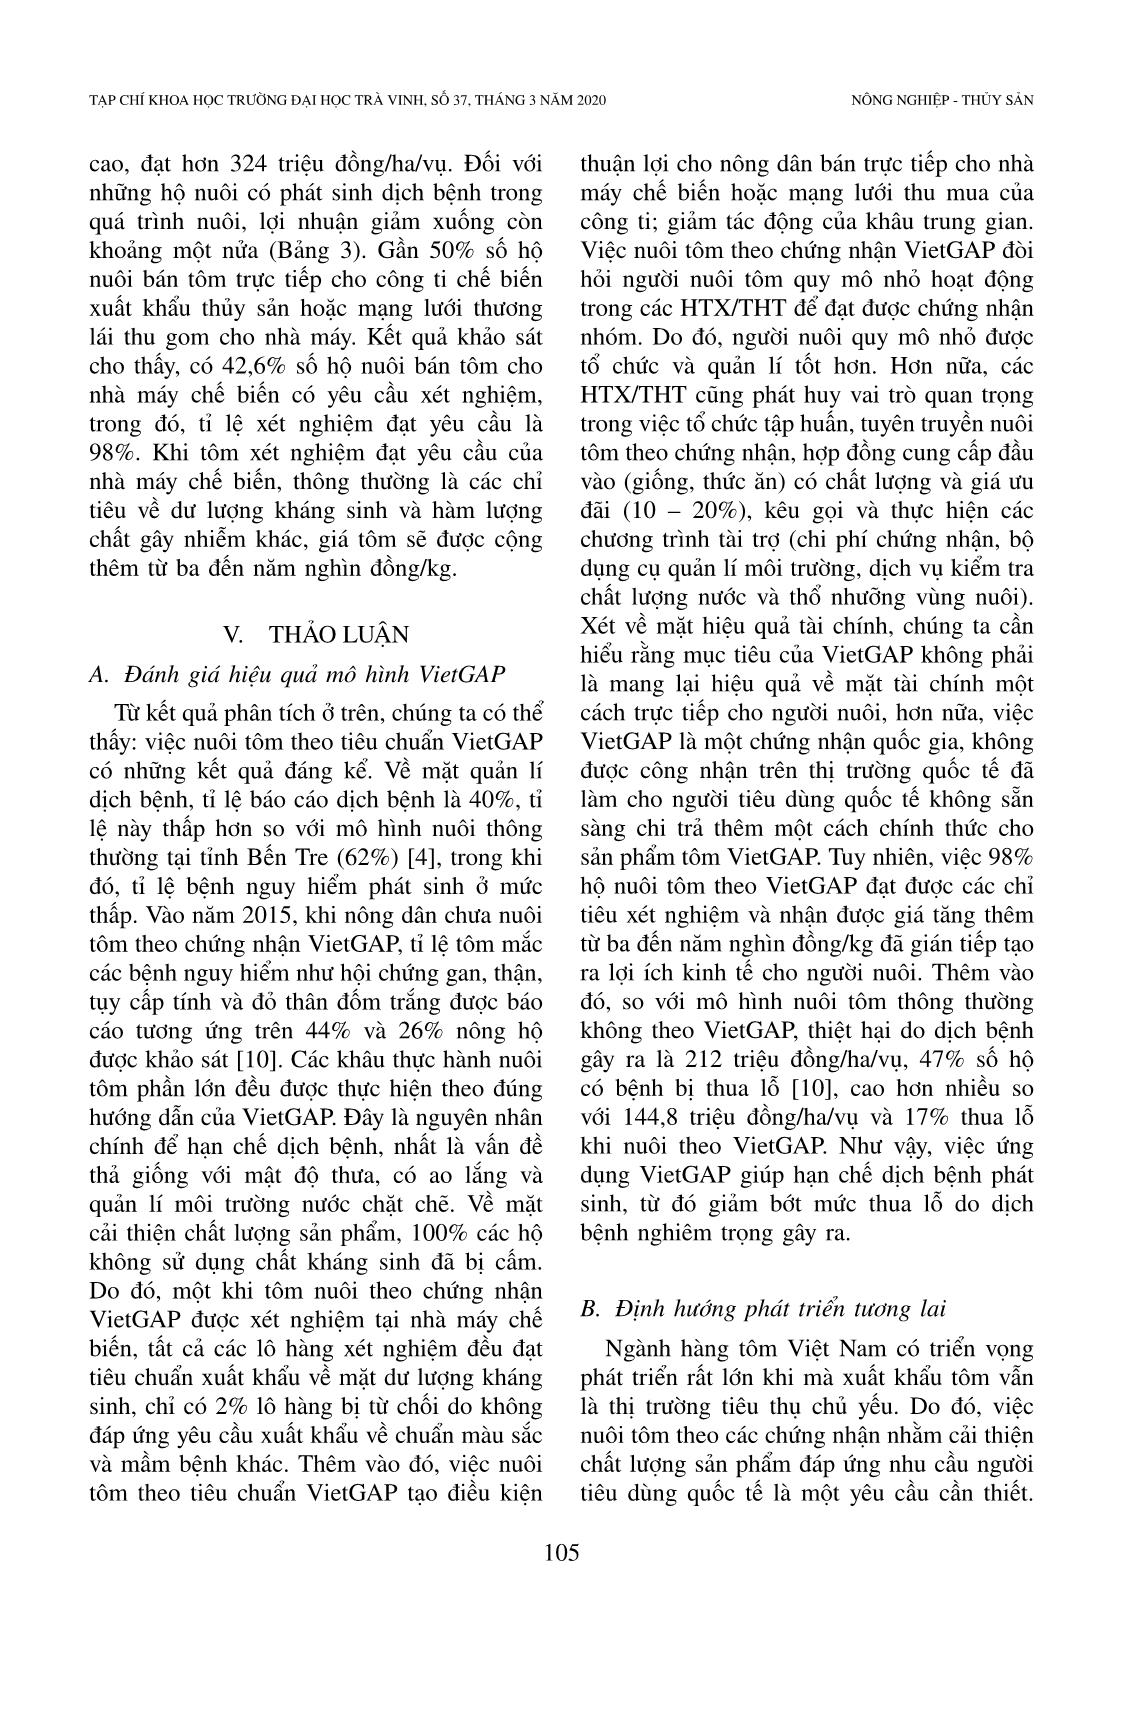 Hiện trạng và vai trò của chứng nhận Vietgap trong nuôi tôm: Nghiên cứu trường hợp nuôi tôm thẻ chân trắng ở tỉnh Sóc Trăng, Việt Nam trang 8